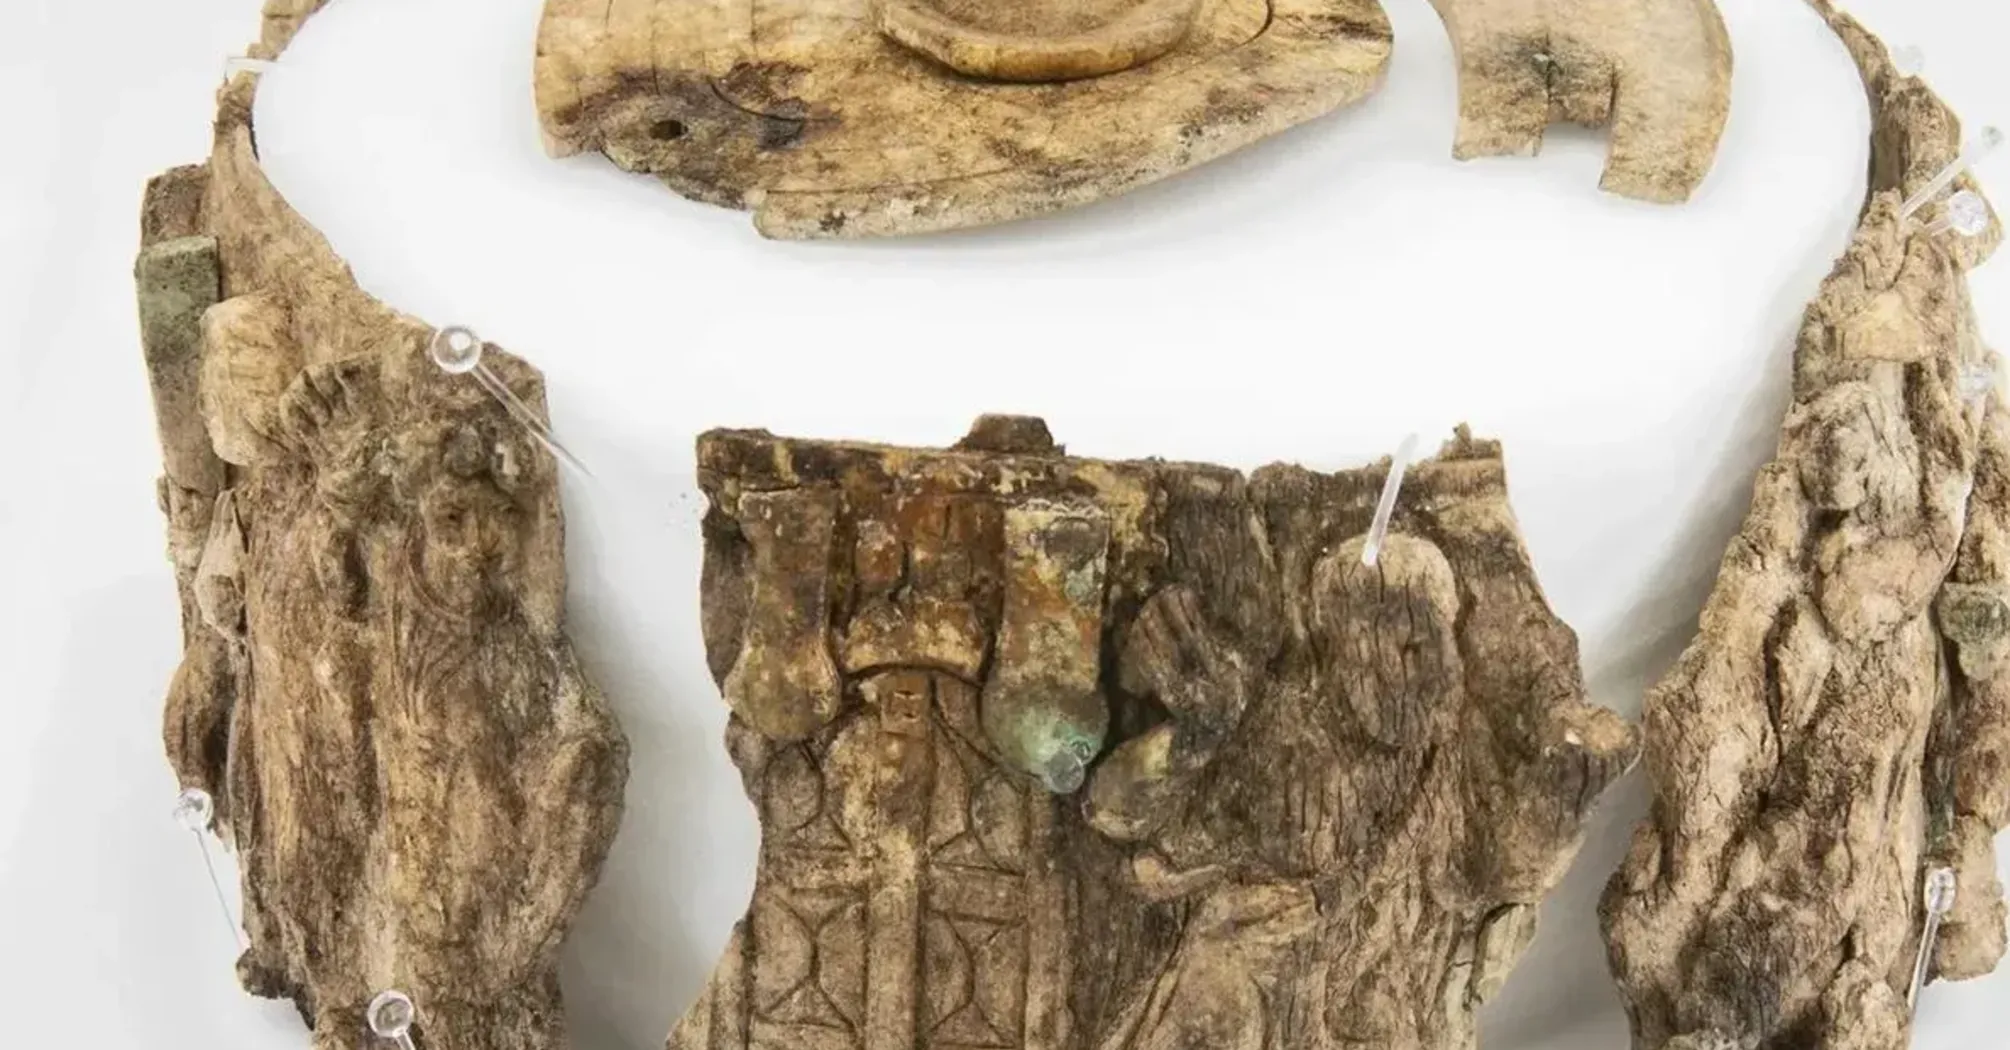 'Особенно важный' христианский артефакт возрастом 1500 лет был найден в Австрии (фото)